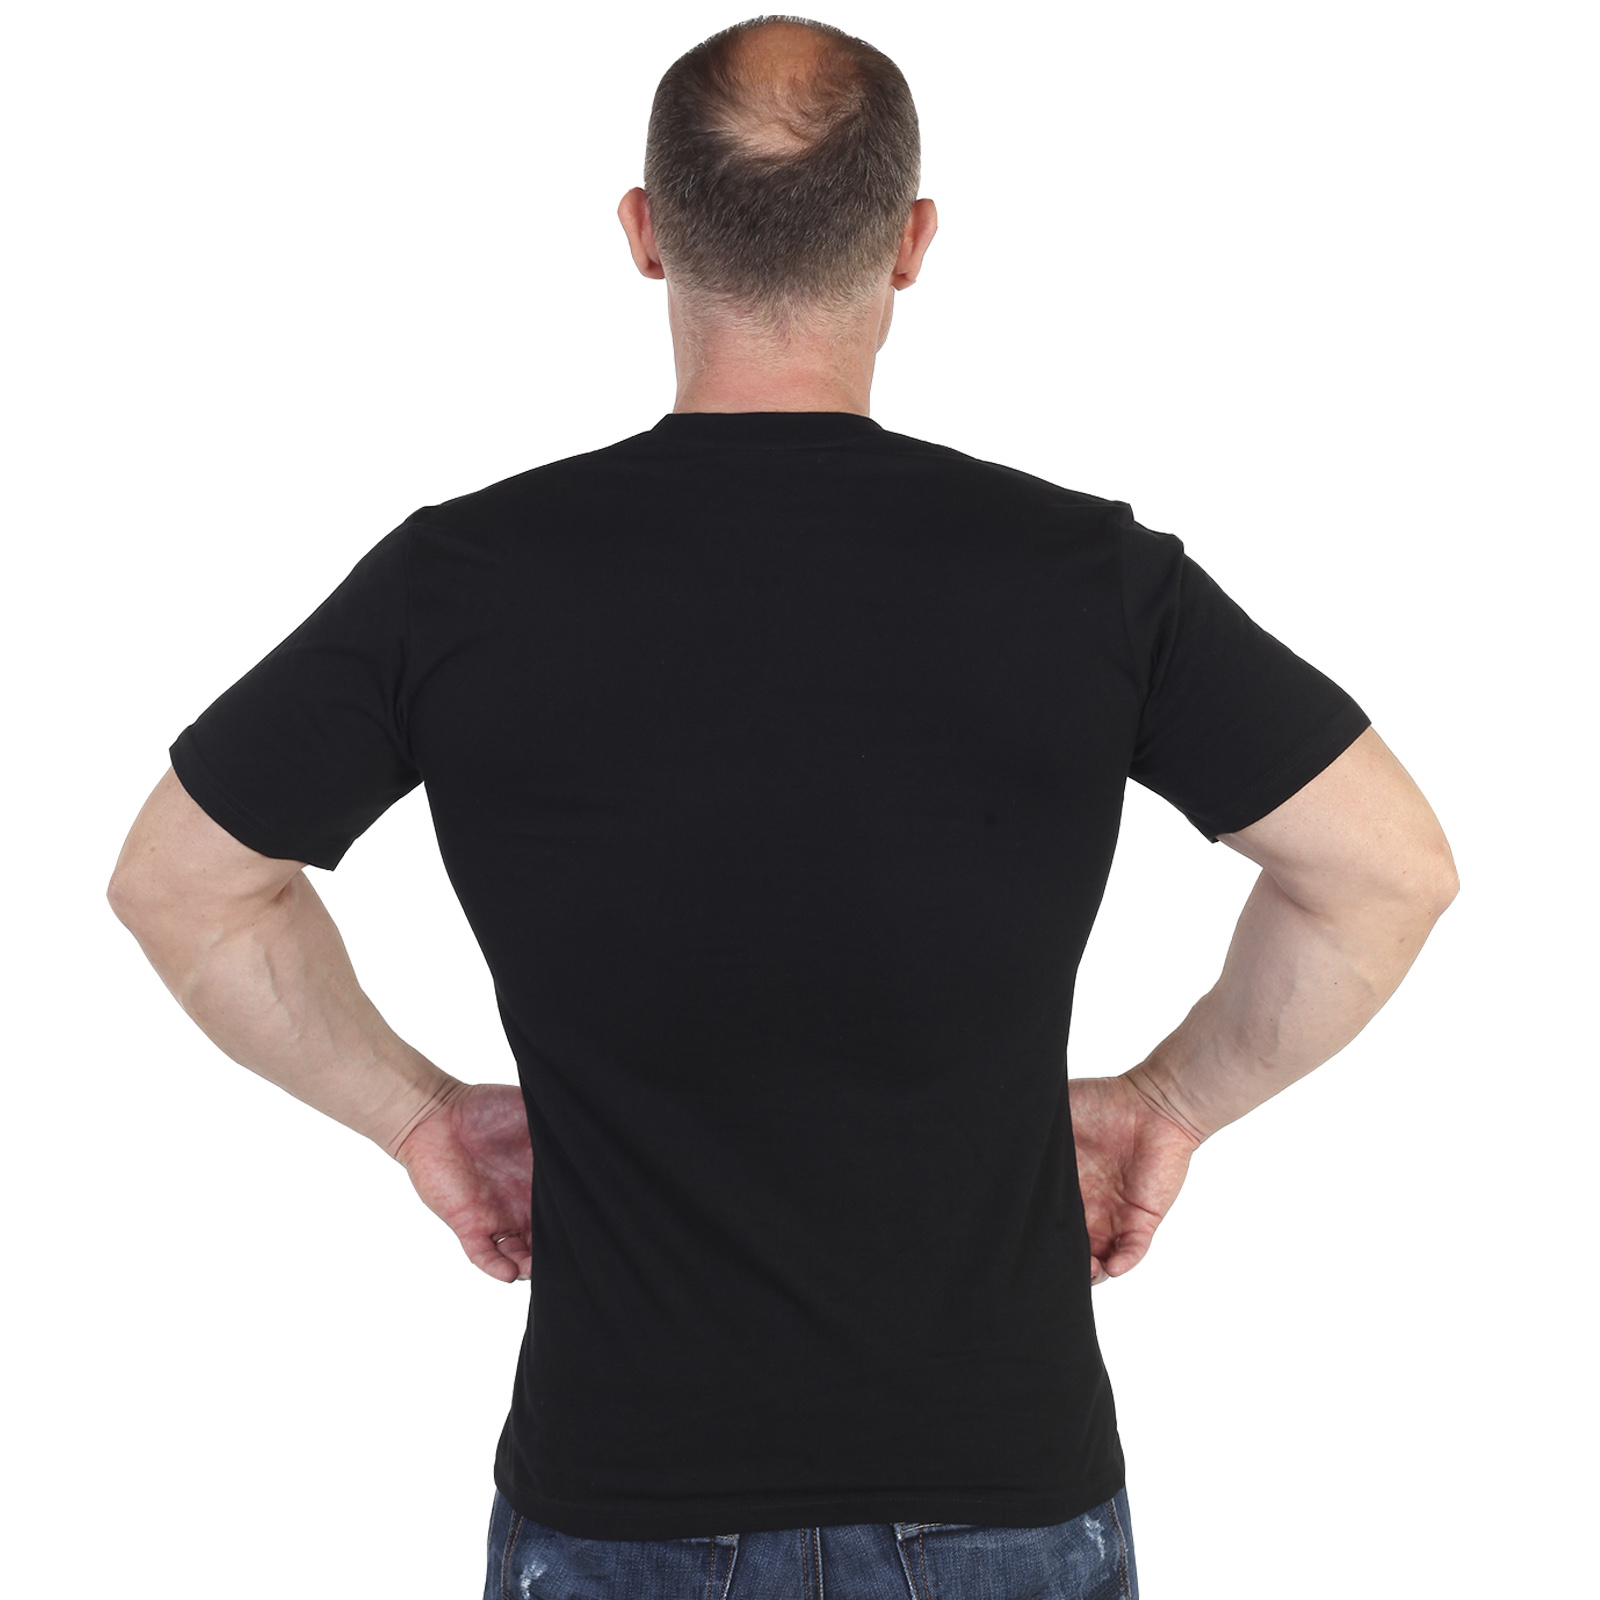 Мужские футболки черного цвета – продажа оптом и в розницу